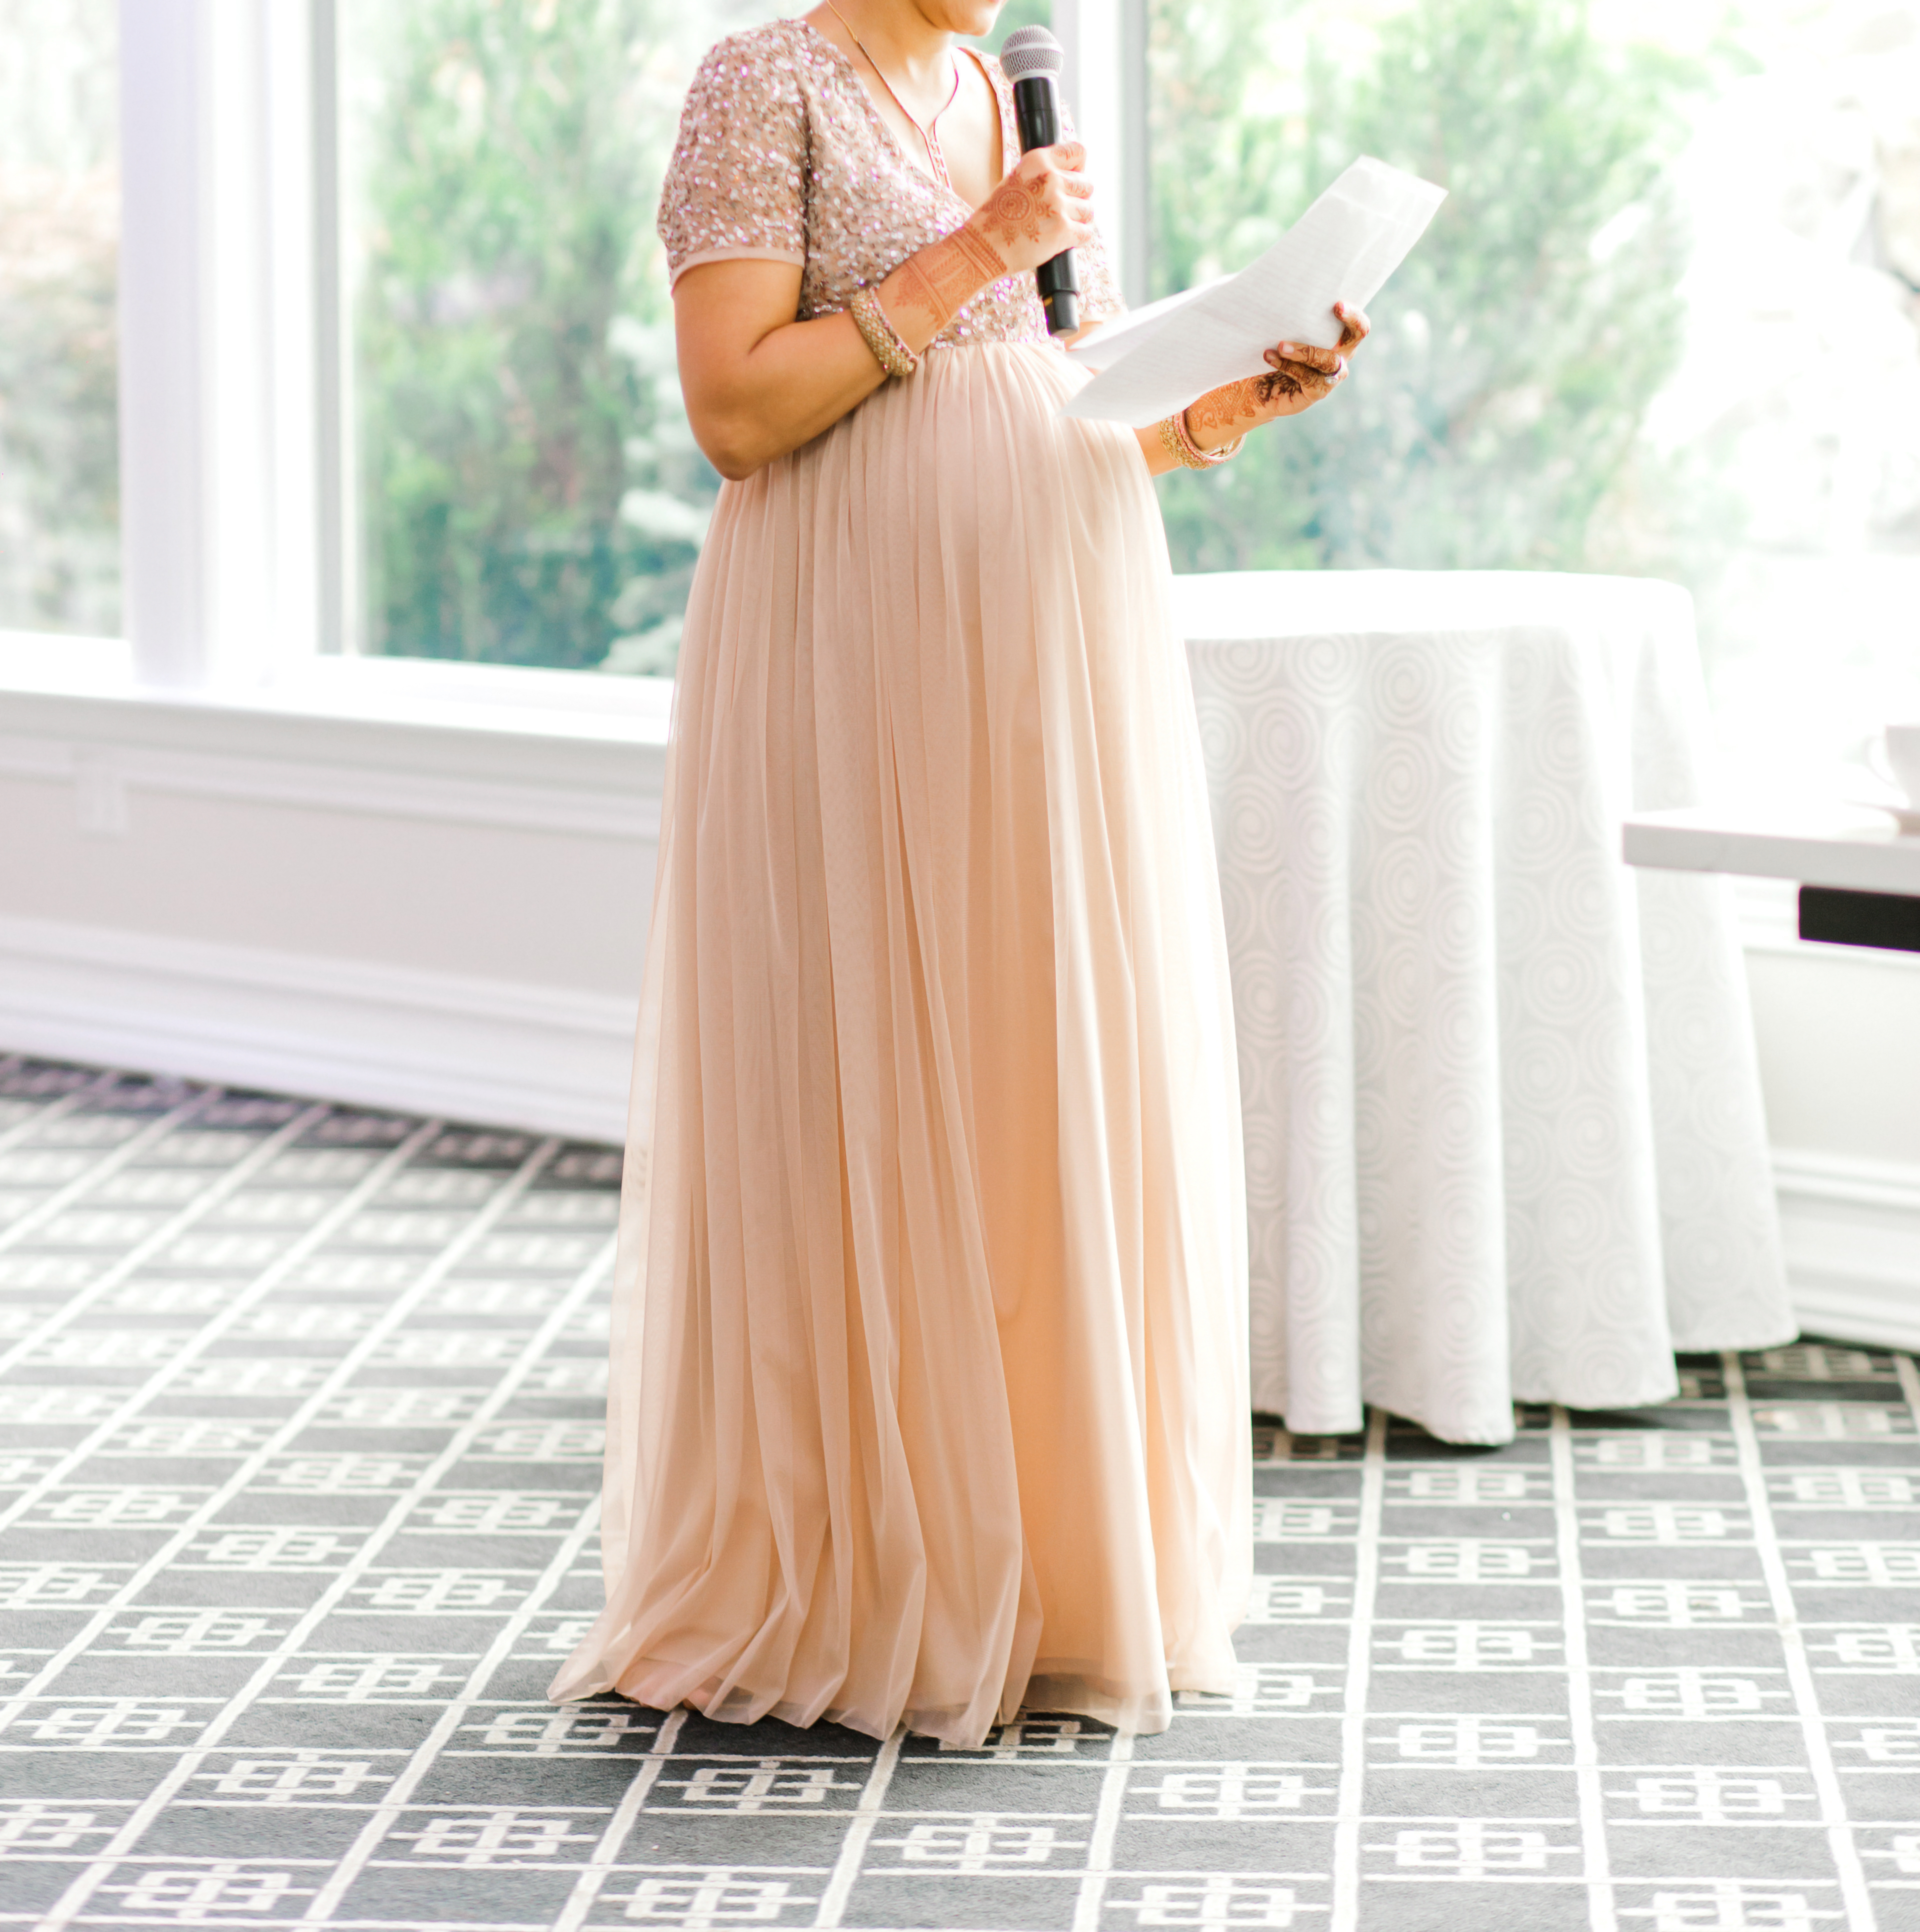 Ein Bild, auf dem jemand von einer Hochzeitsgesellschaft eine Rede hält | Quelle: Shutterstock